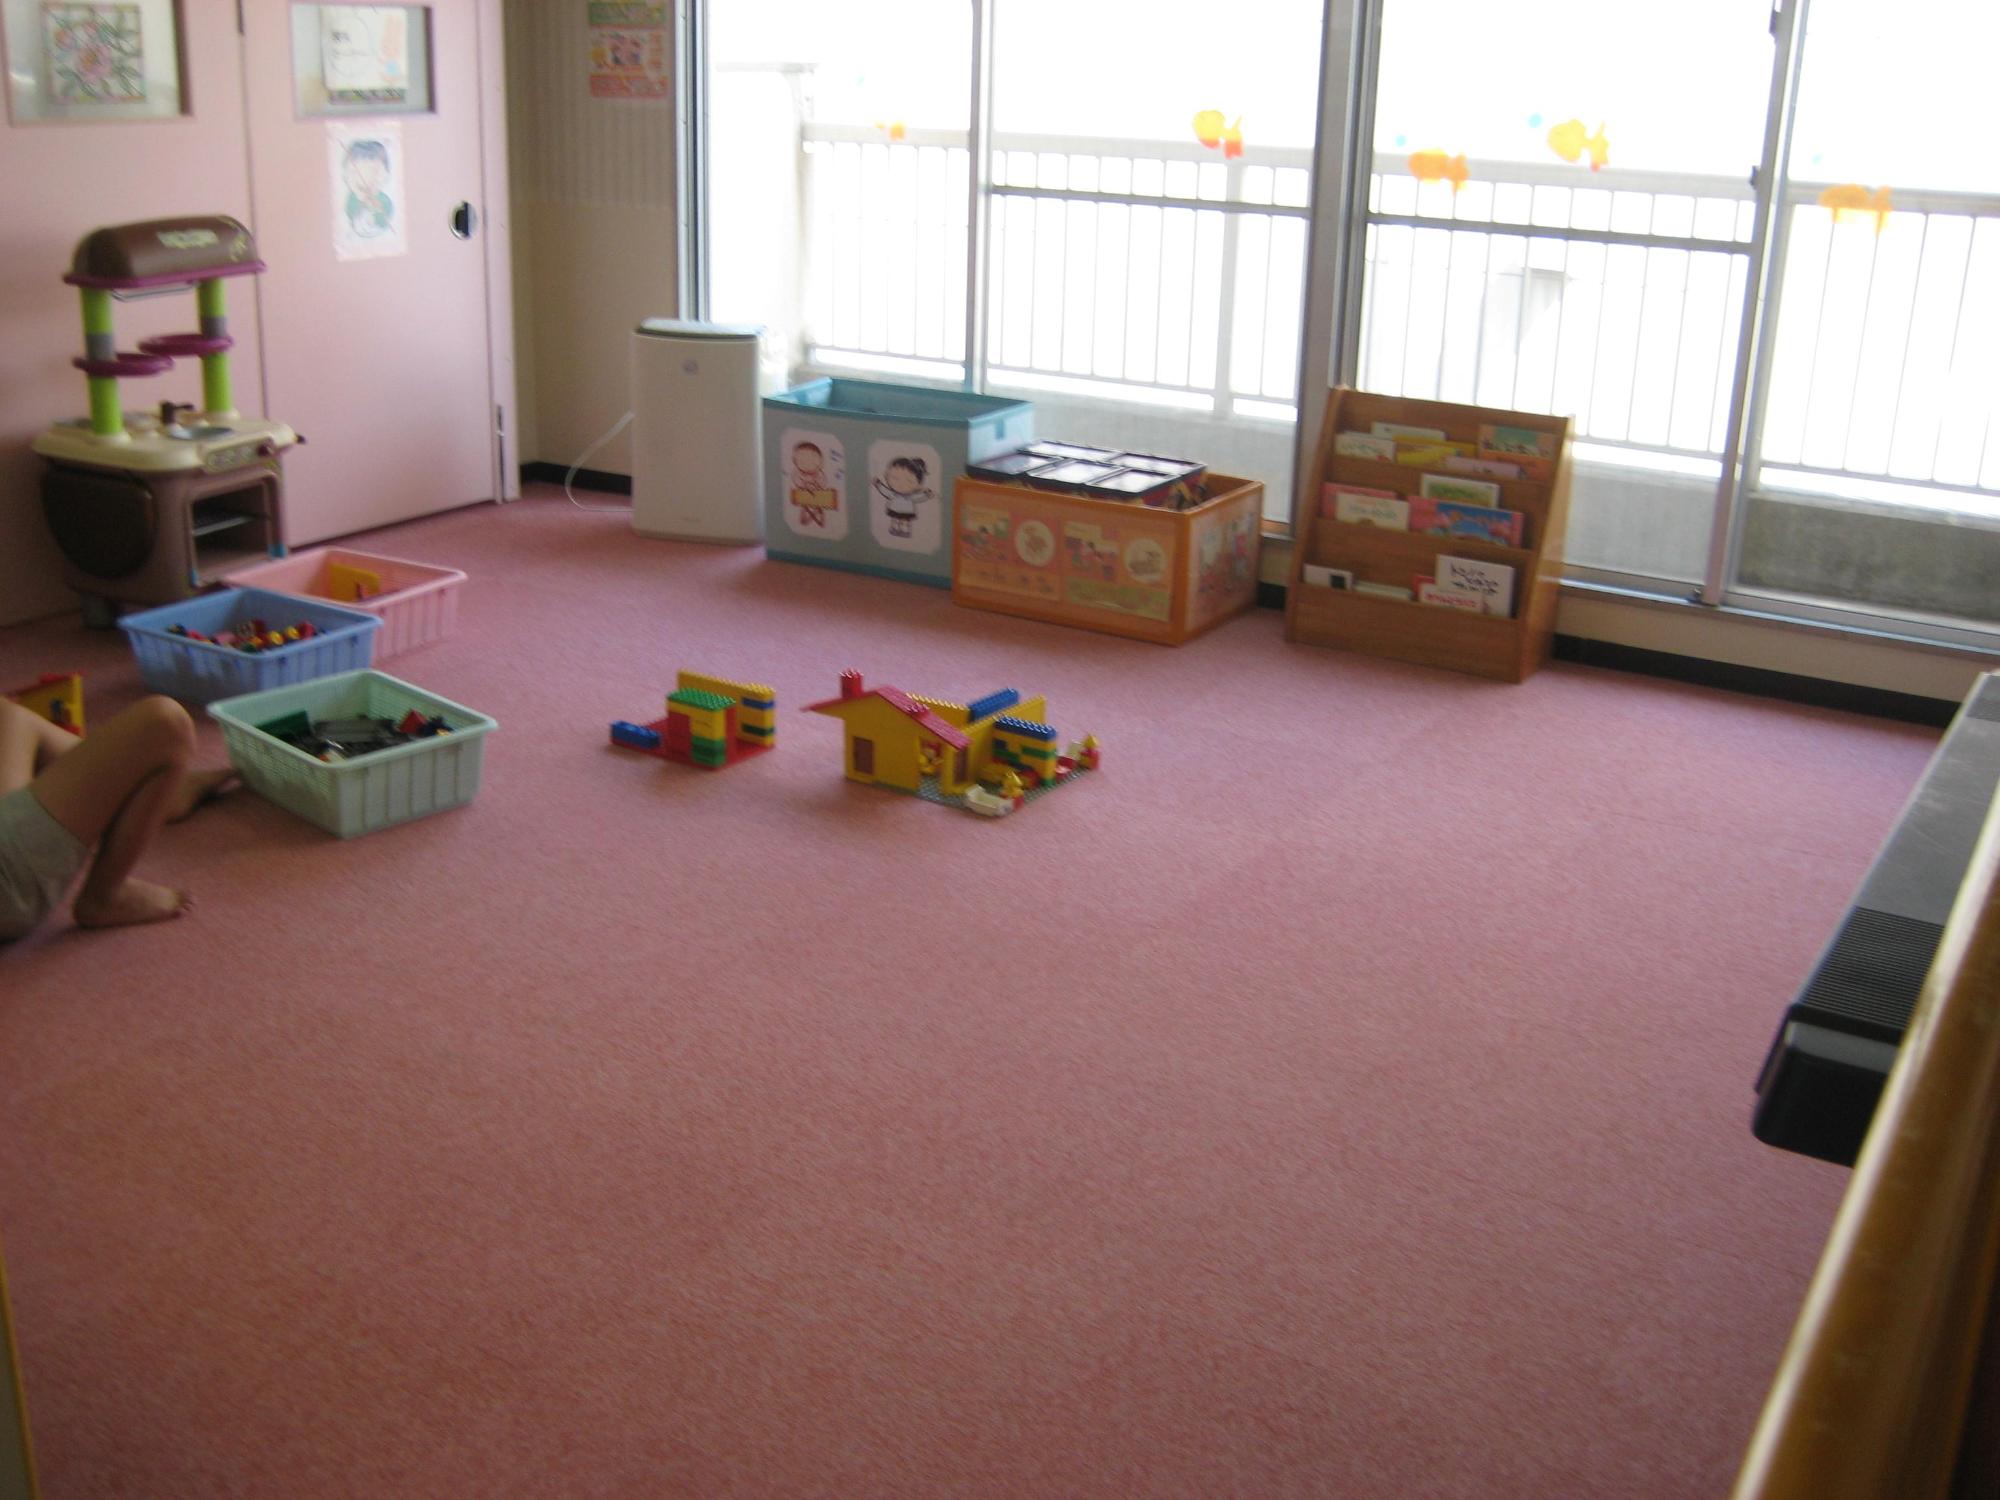 ピンク色の床に乳幼児用のおもちゃがある部屋の写真